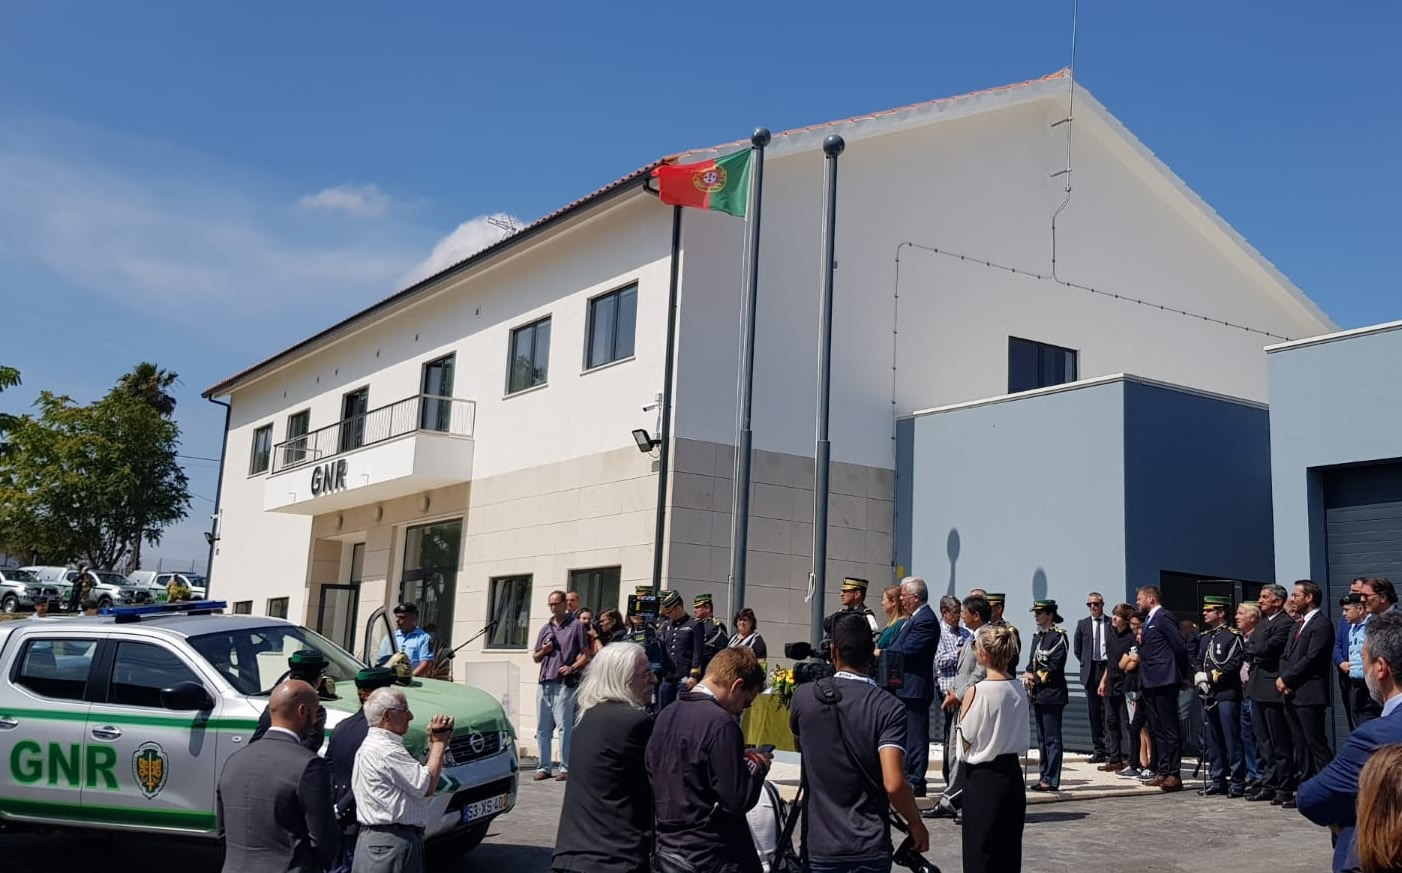 Inauguración de la nueva sede de GNR de Alcanena